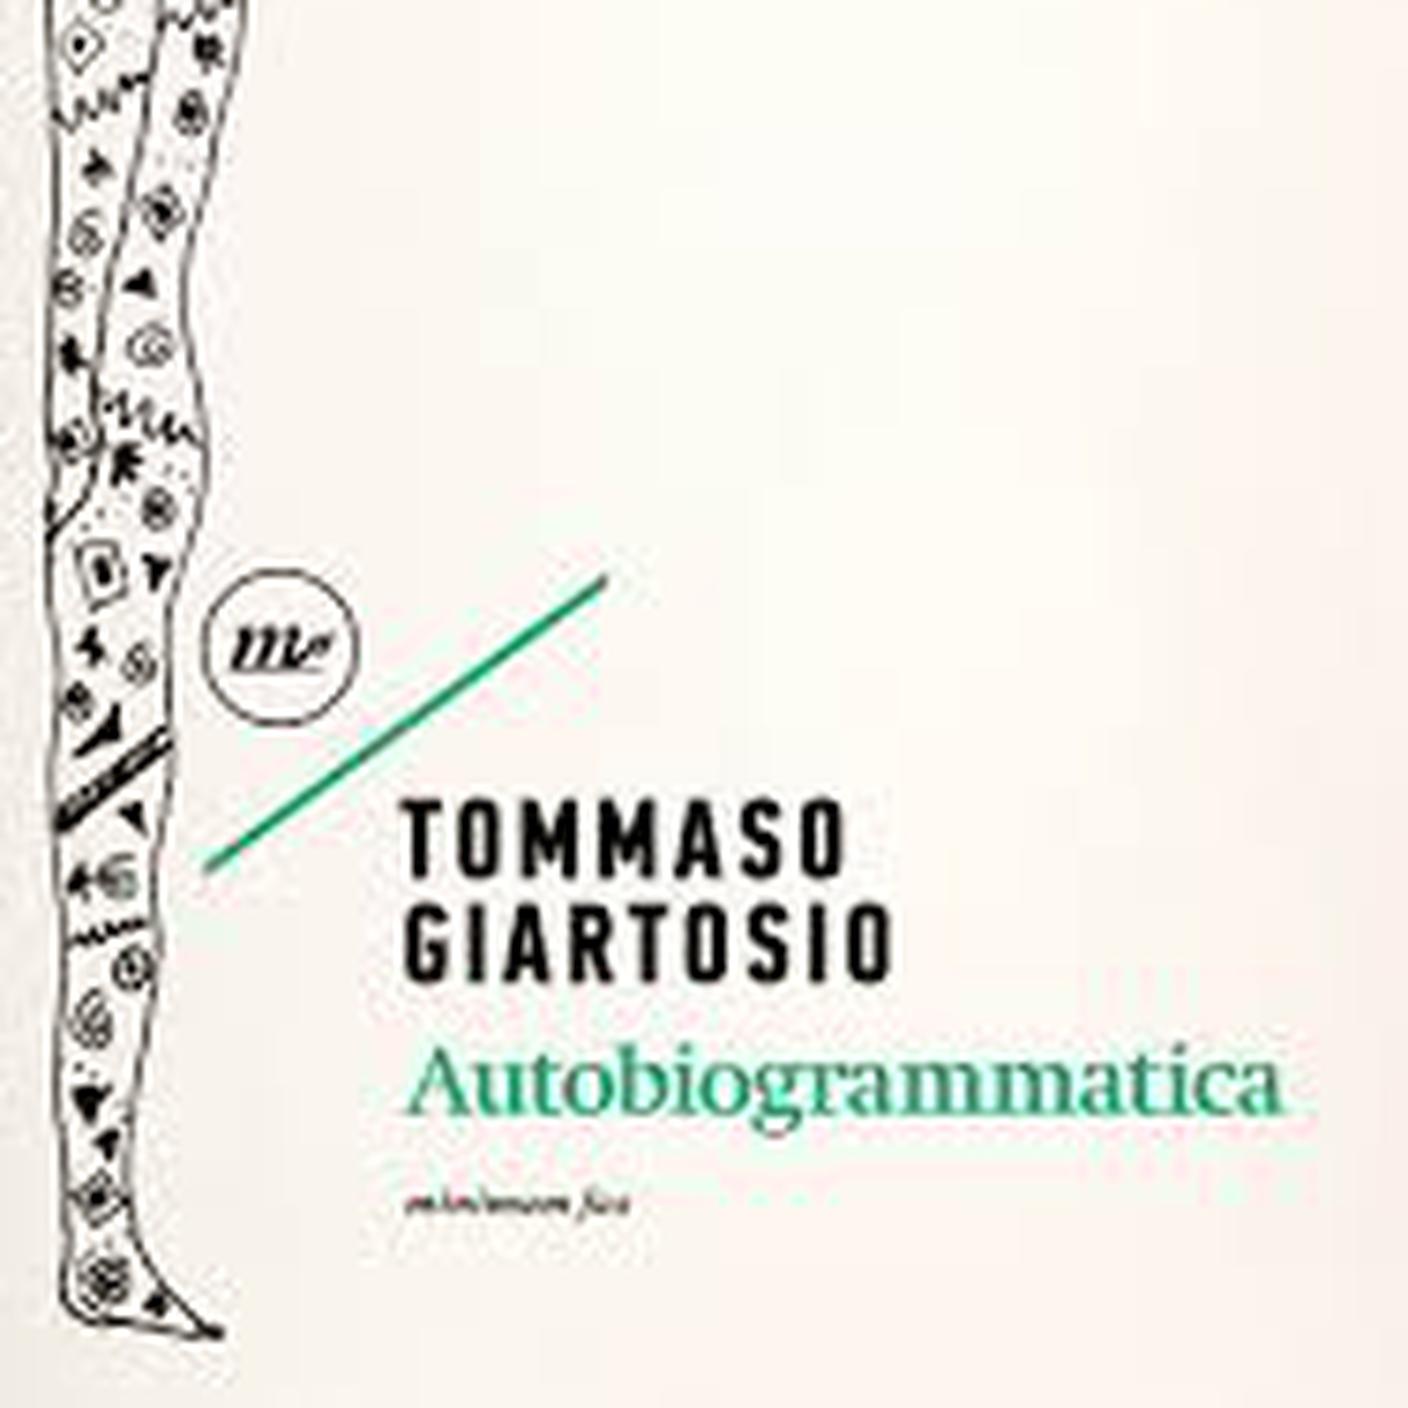 “Autobiogrammatica”, Tommaso Giartosio, Minimum fax (dettaglio copertina)